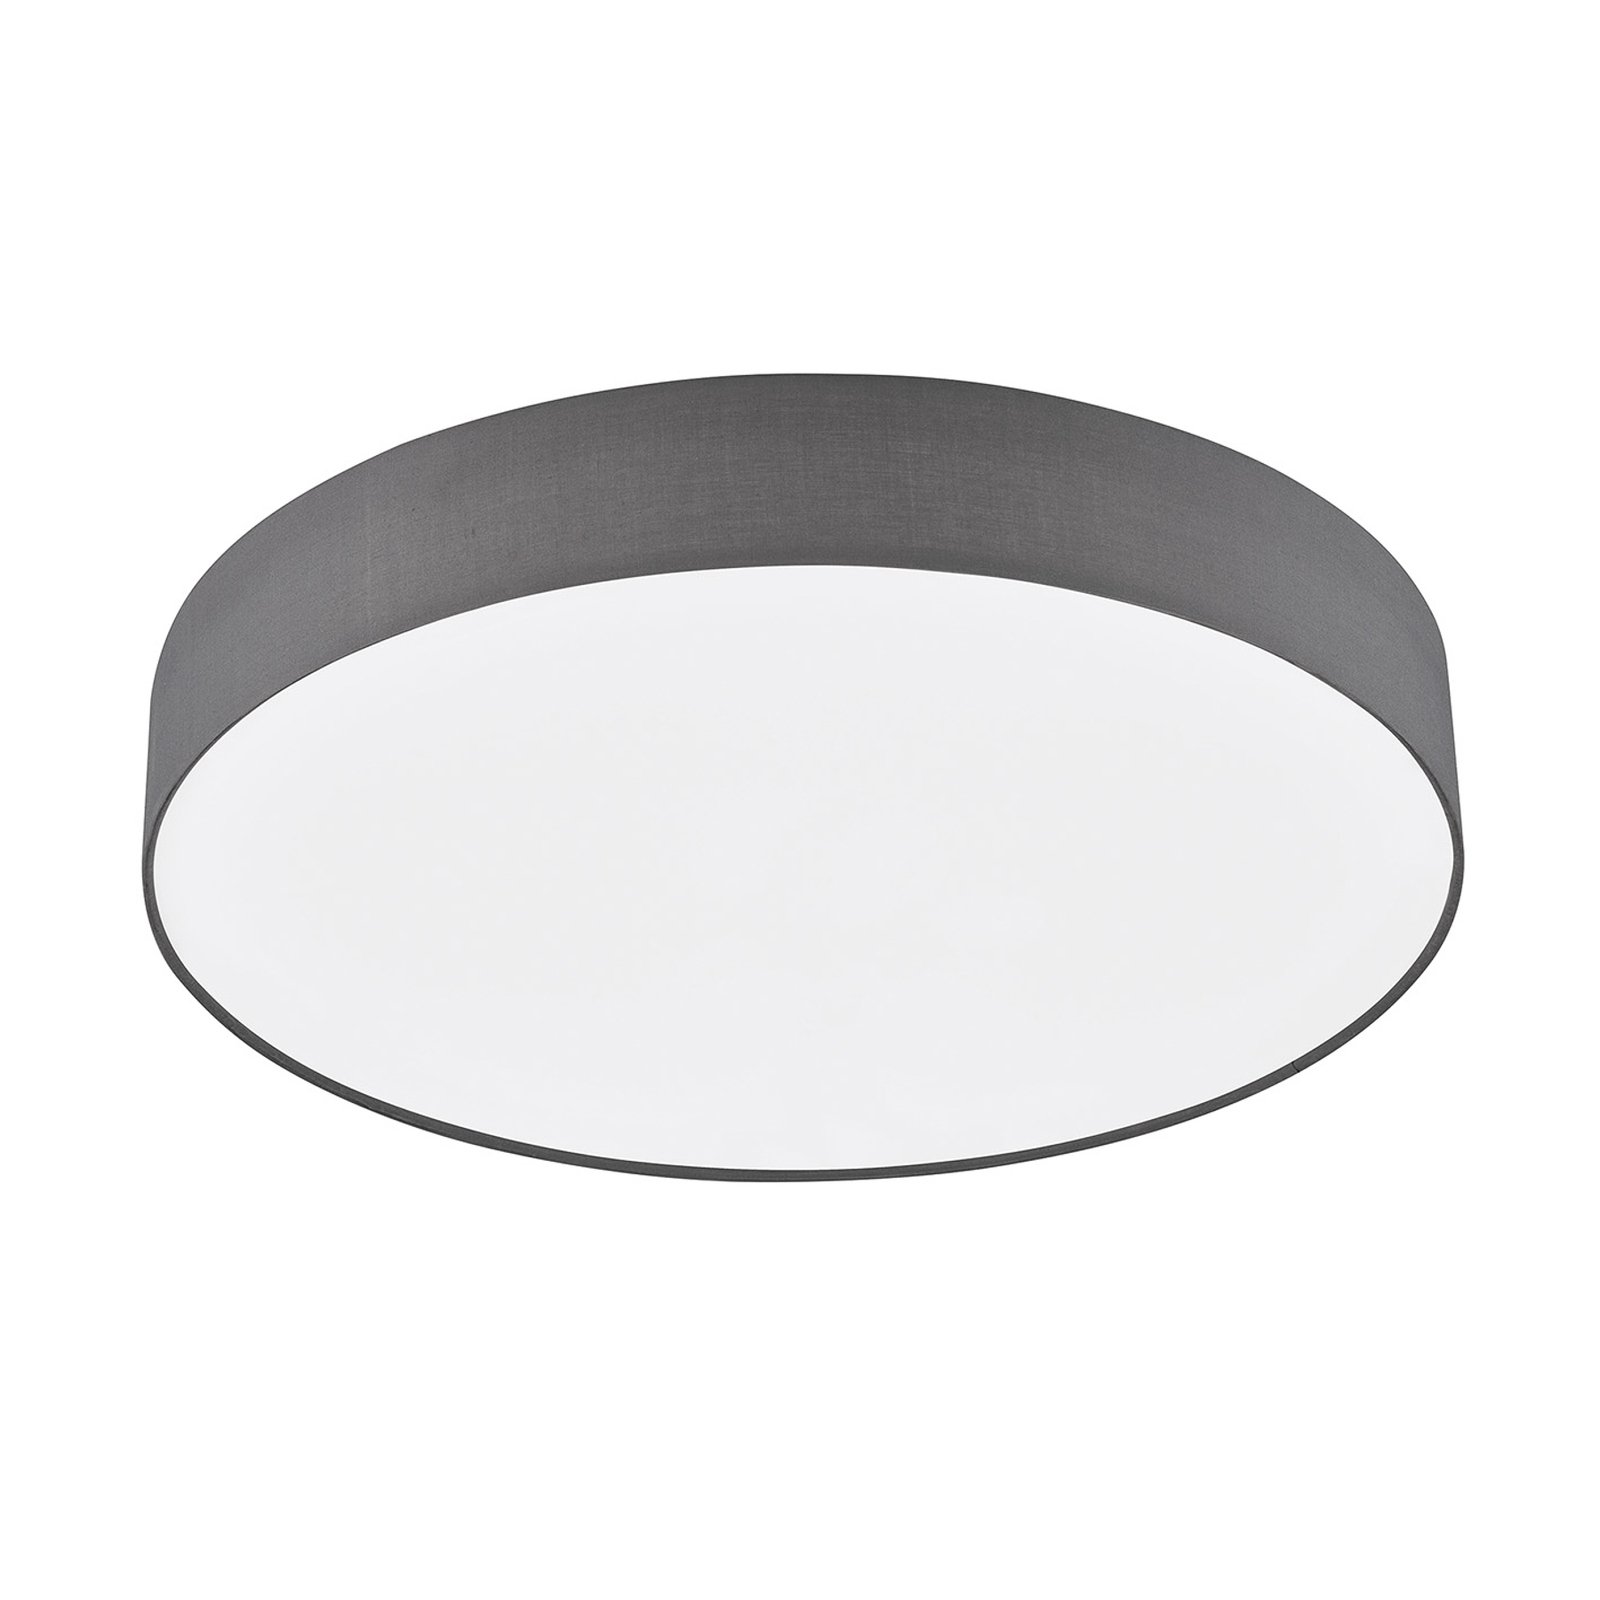 Schöner Wohnen Pina LED-taklampe CCT mørk grå